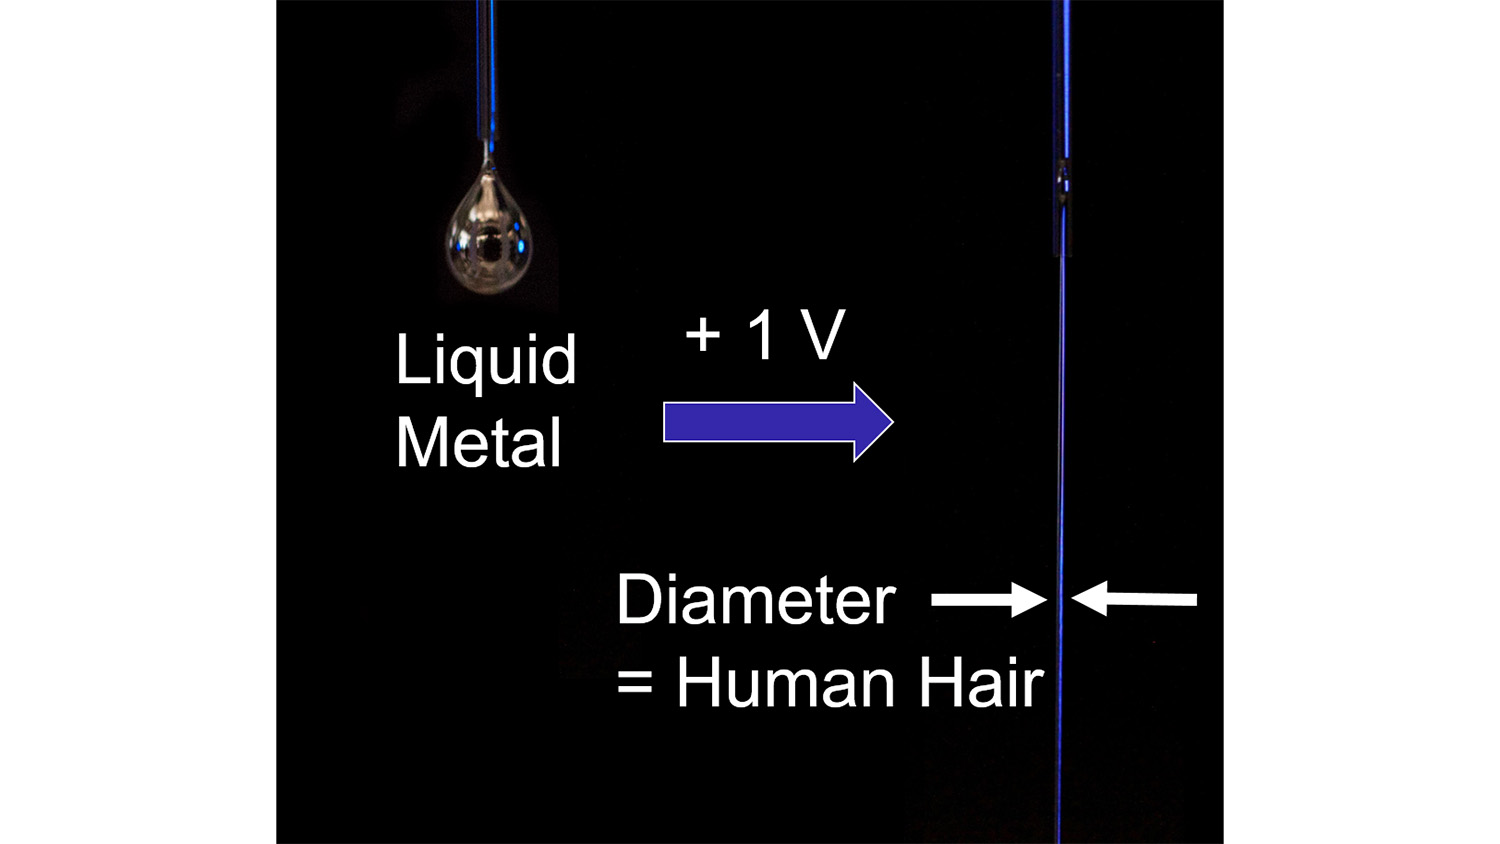 当施加小电压时，液态金属滴落到液态金属流